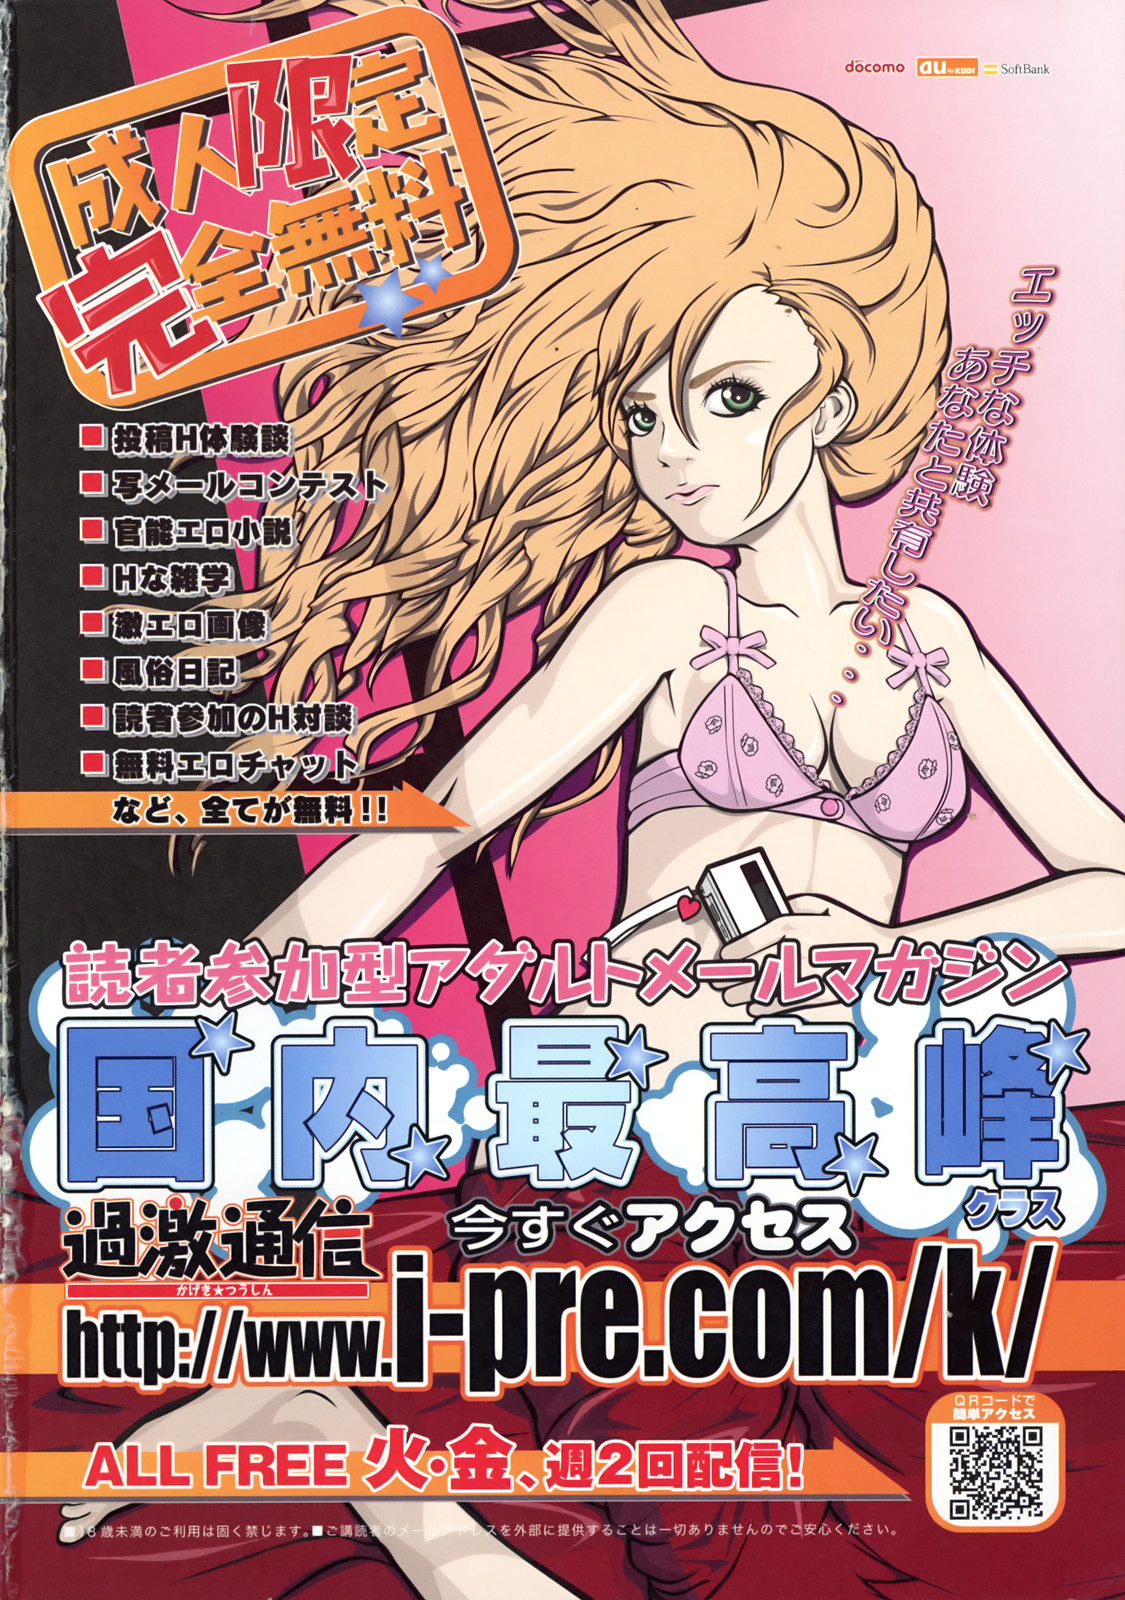 COMIC天魔 コミックテンマ 2009年2月号 VOL.129